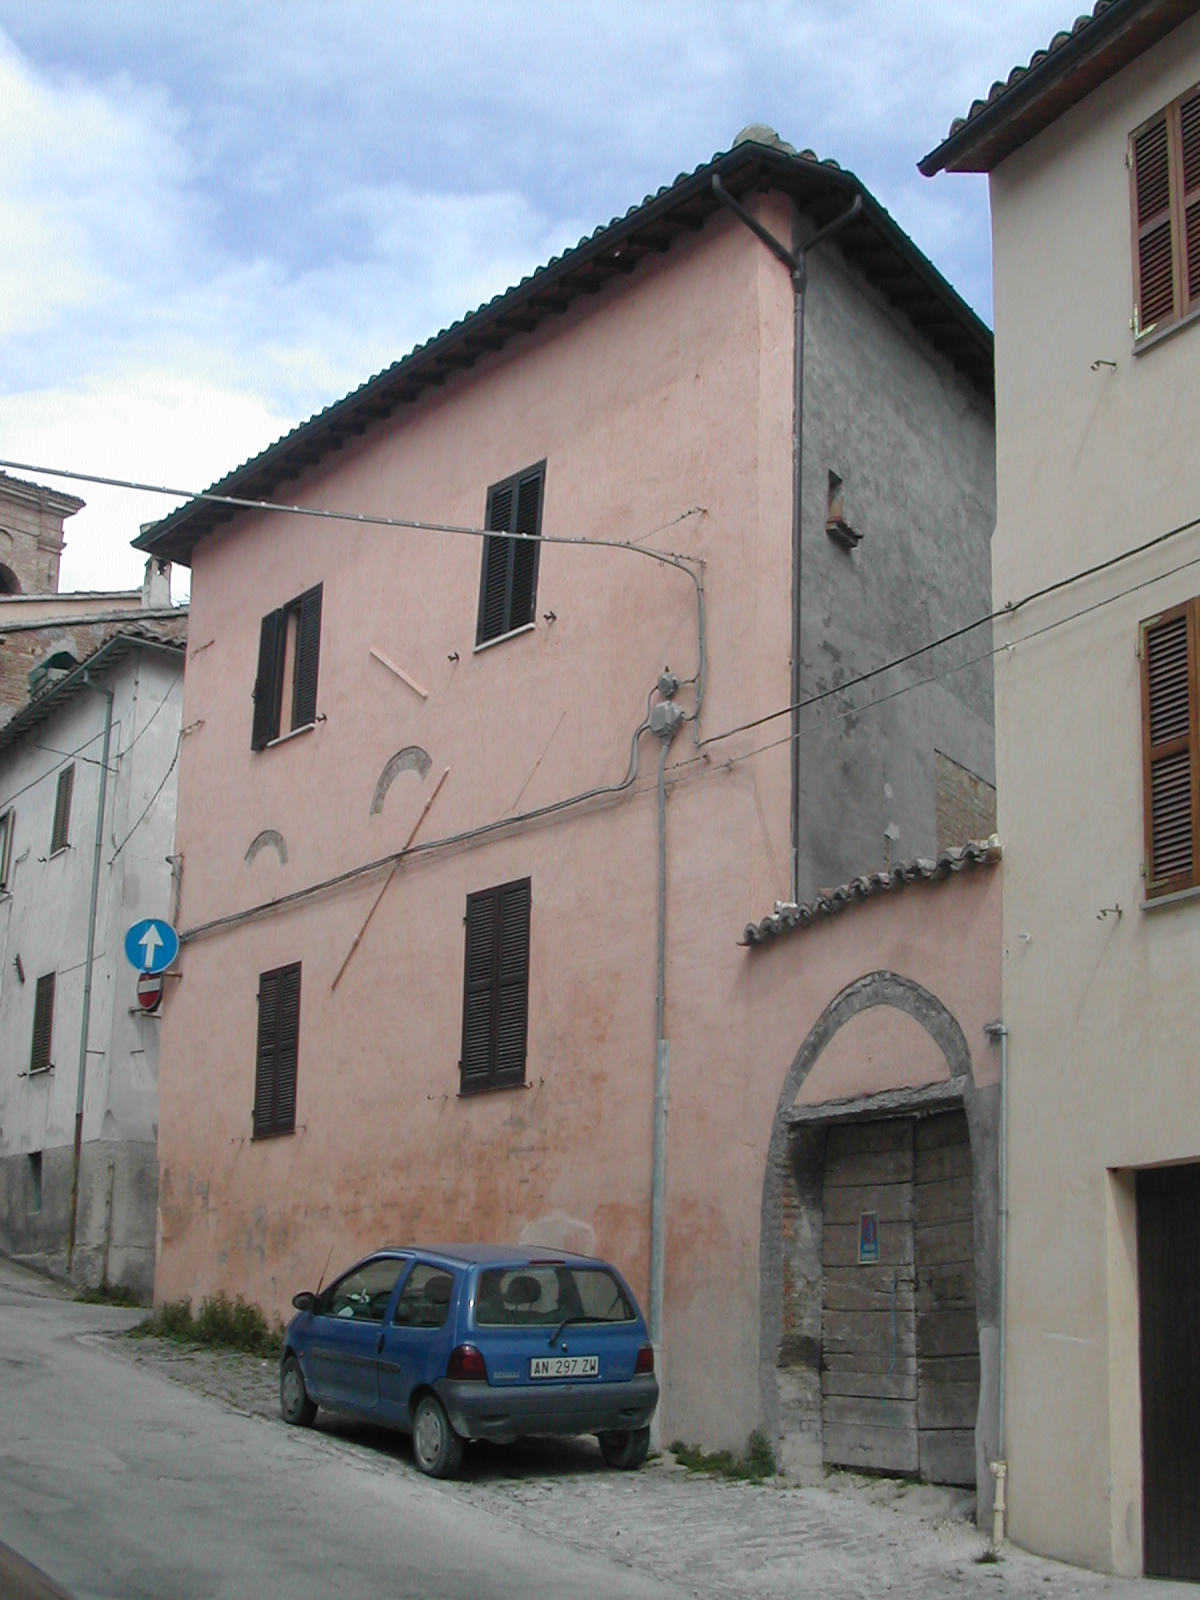 Palazzo in Via Pacchiarotti, 3 (palazzo, signorile) - Fabriano (AN) 